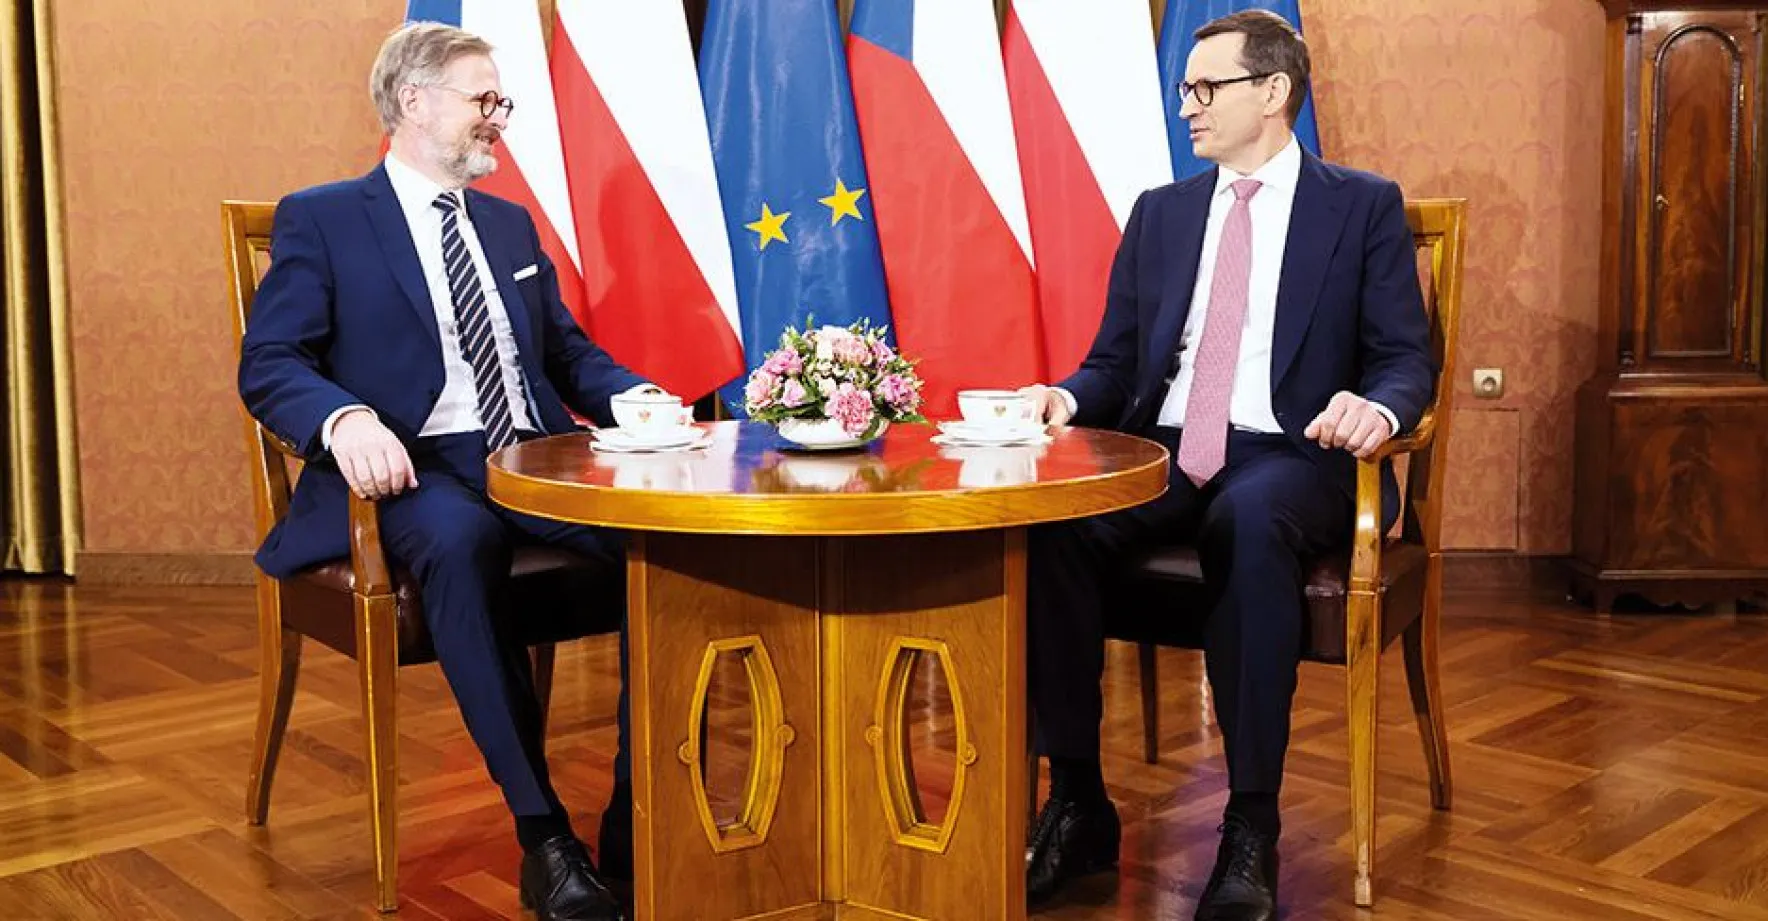 Česko má nové klíčové spojence v krizi: Varšavu a Paříž